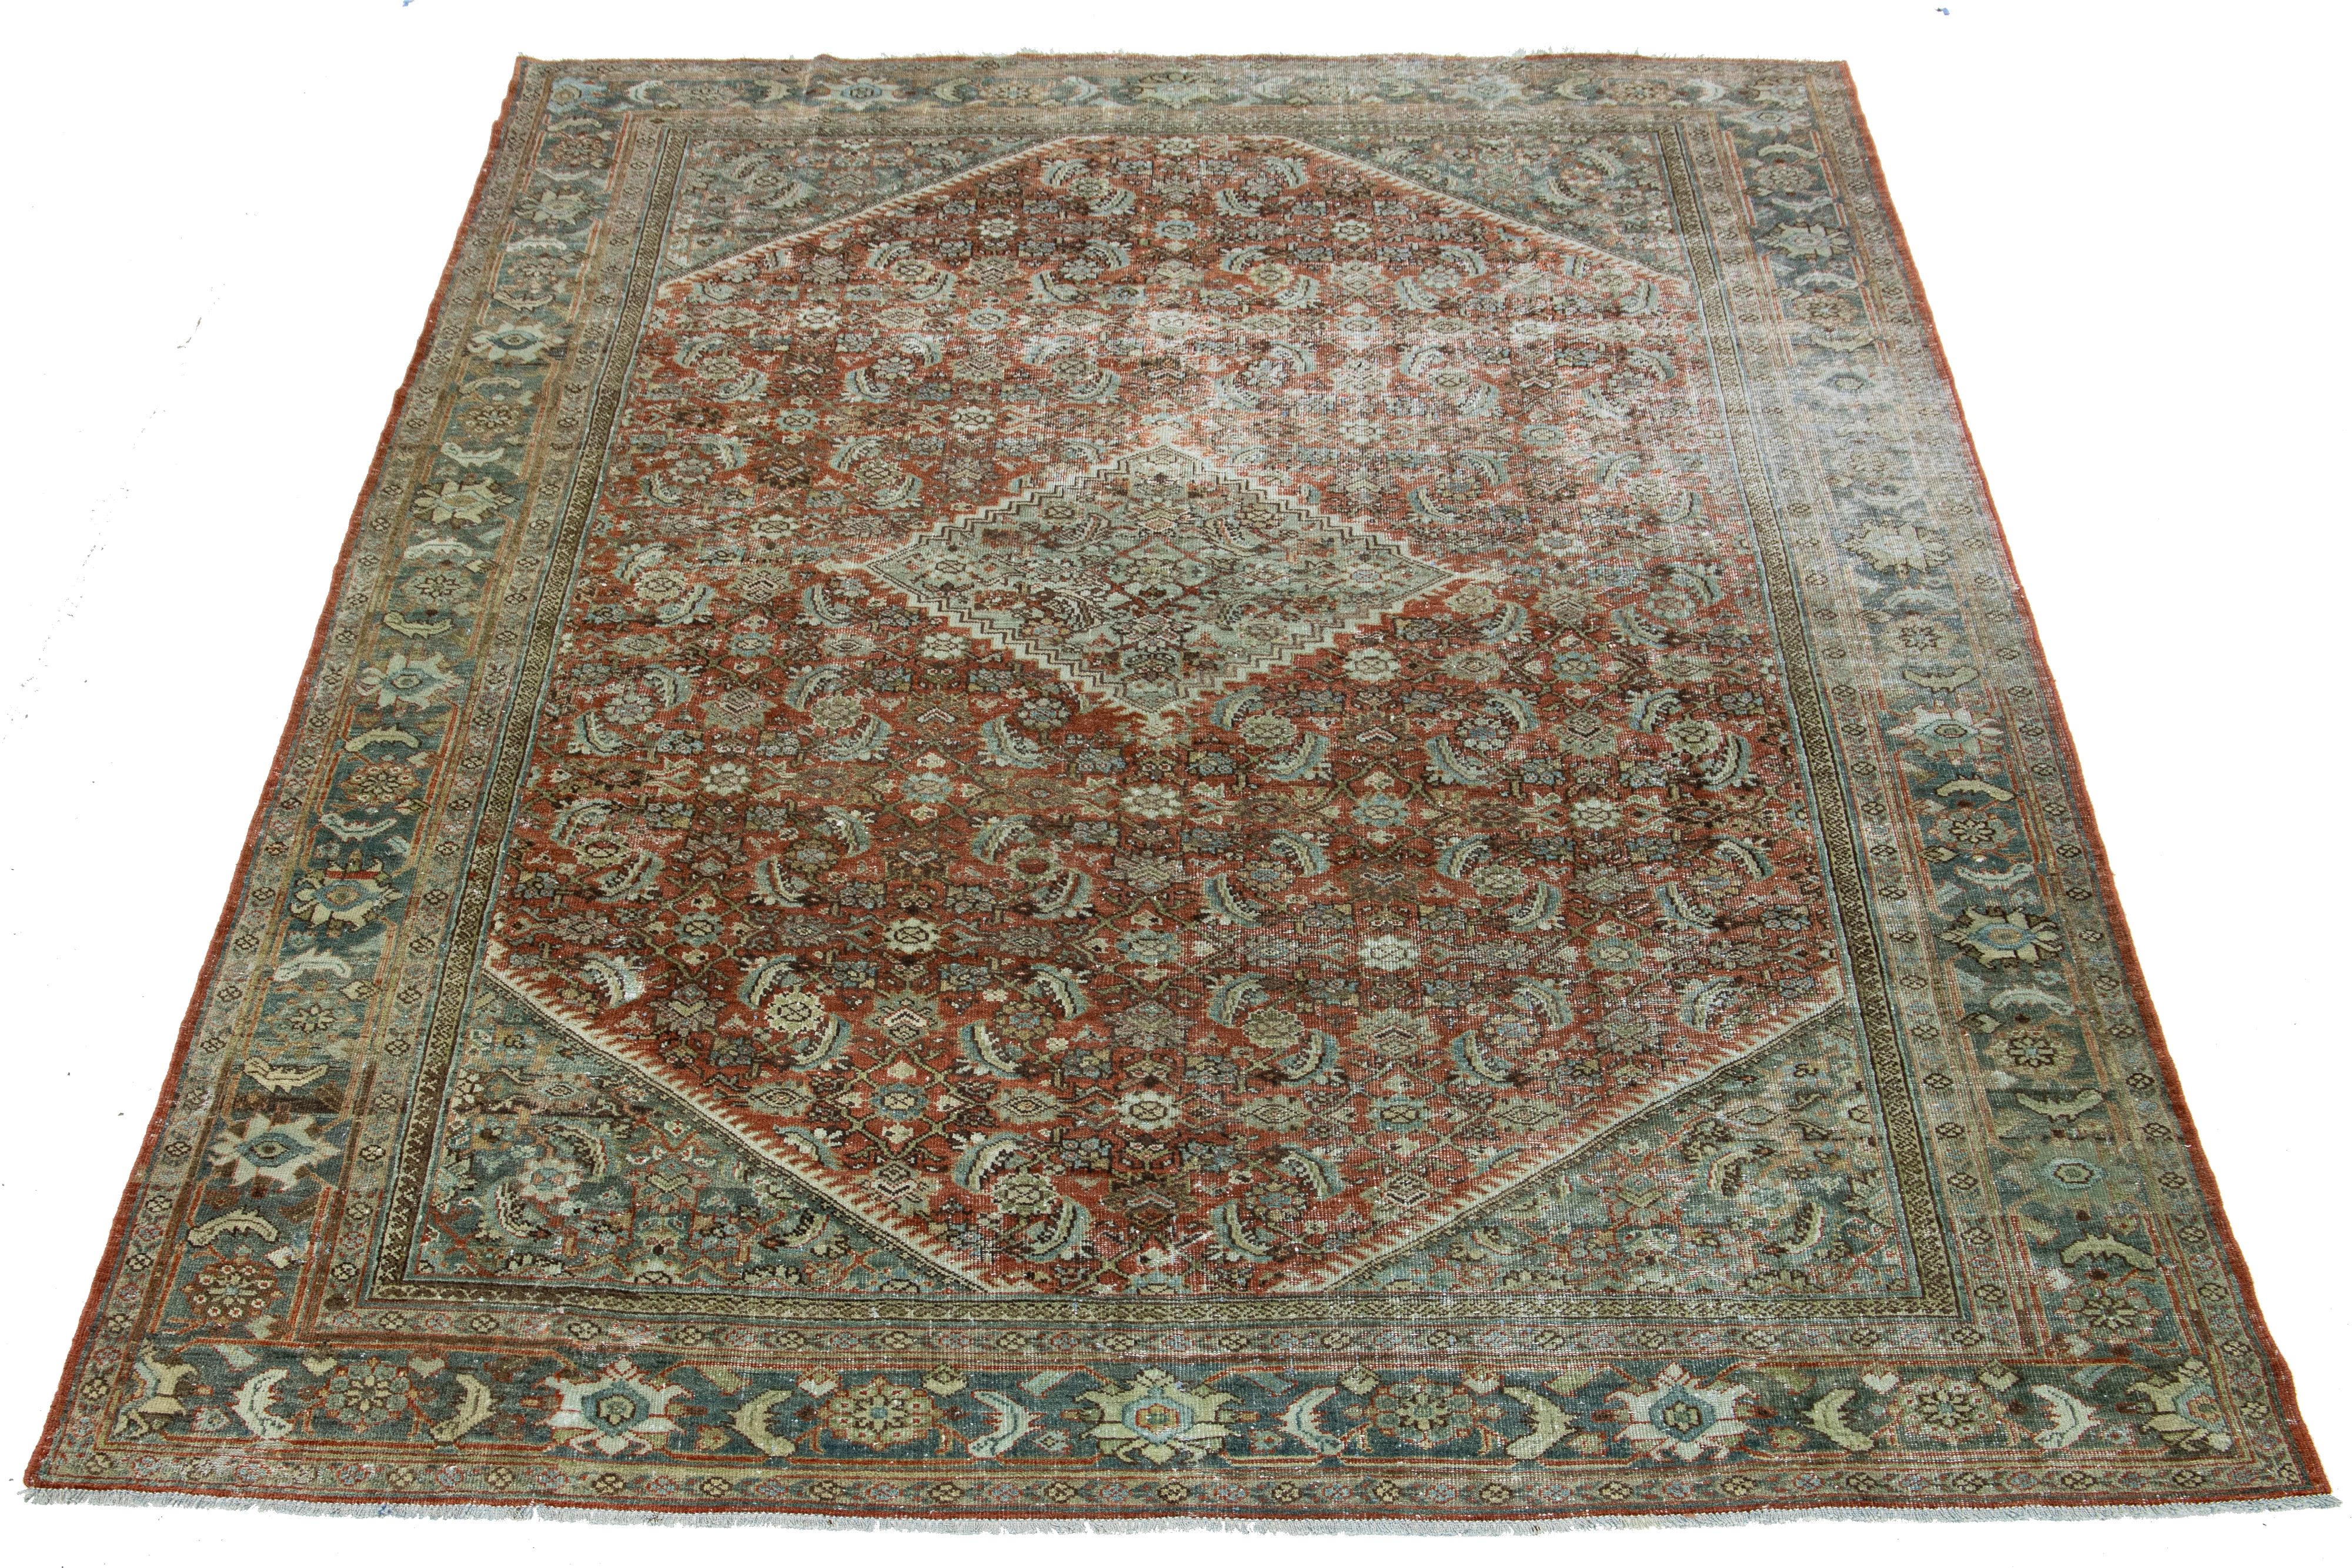 Ce tapis antique Mahal en laine nouée à la main présente un motif all-over avec des accents bleus, bruns et beiges sur un champ de couleur rouge rouille.

Ce tapis mesure 8'6